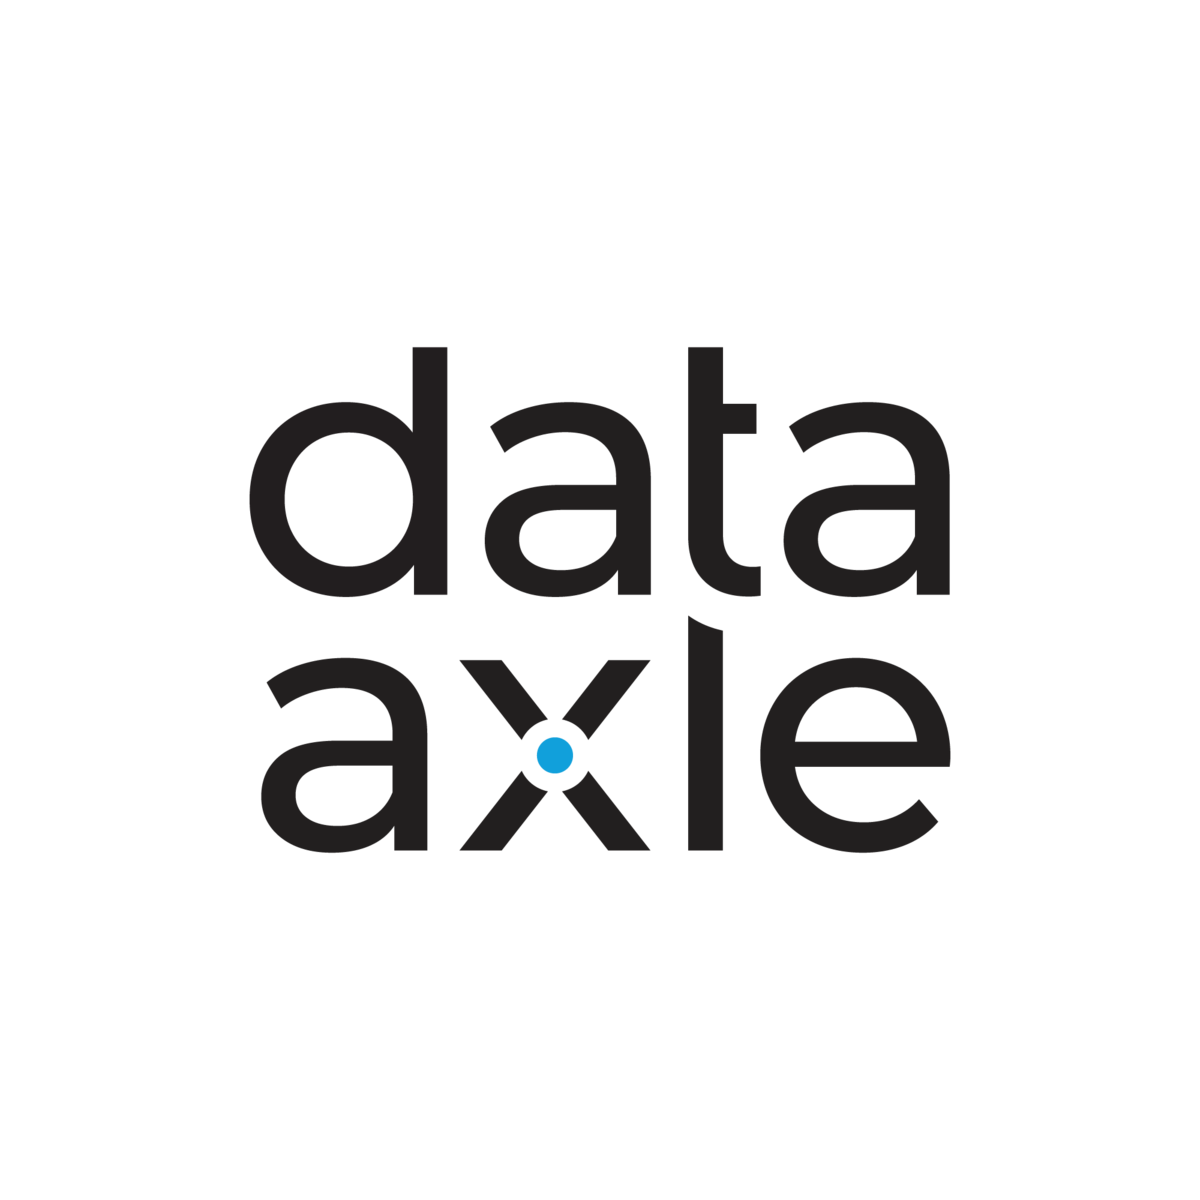 Data Axle